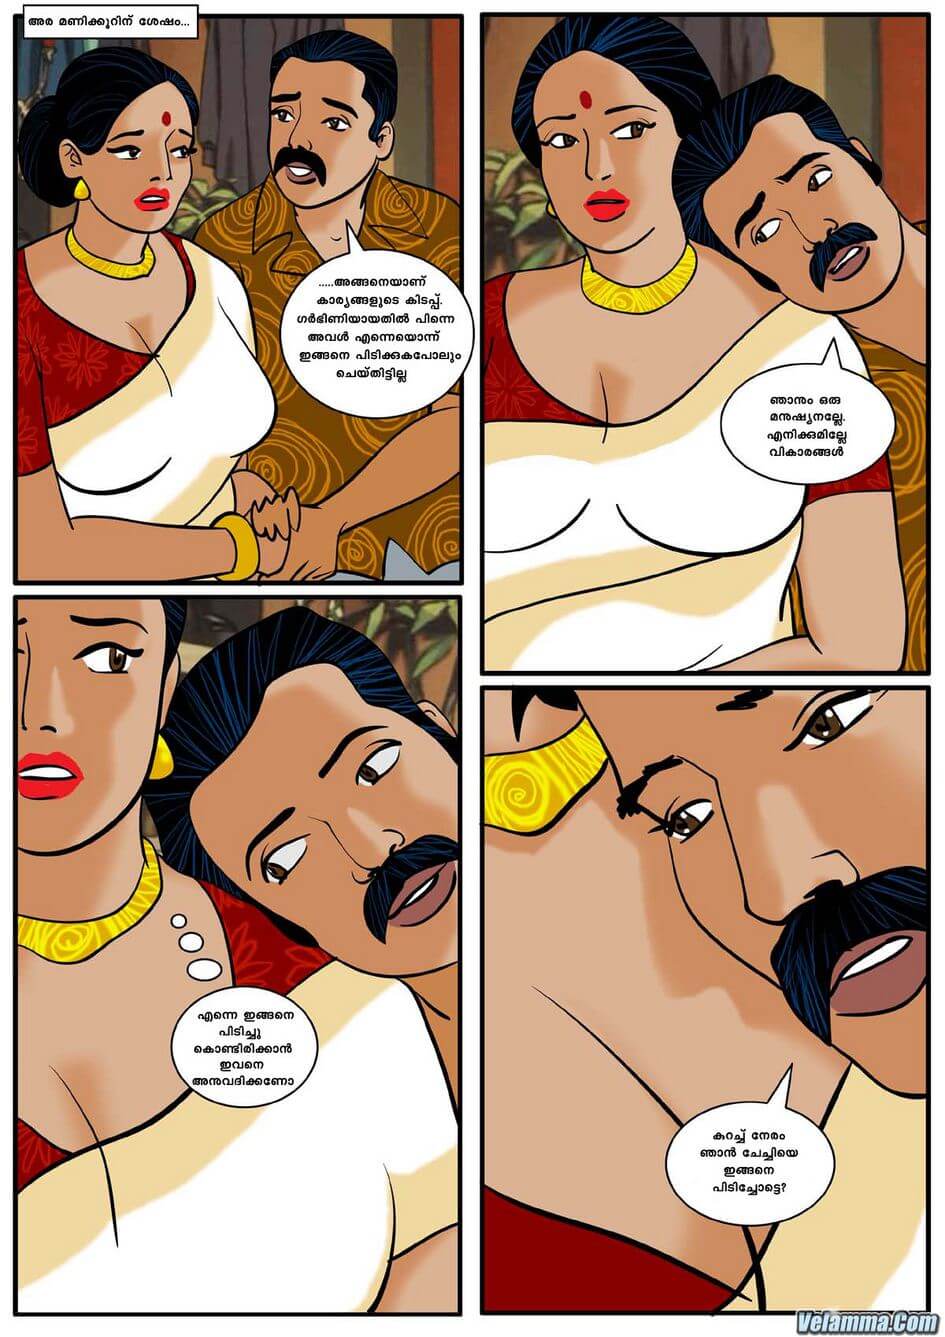 വേലമ്മ കമ്പി കാർട്ടൂൺ: അദ്ധ്യായം 3: അനുജത്തിയുടെ ഭർത്താവ് | Malayalam Sex  Comics